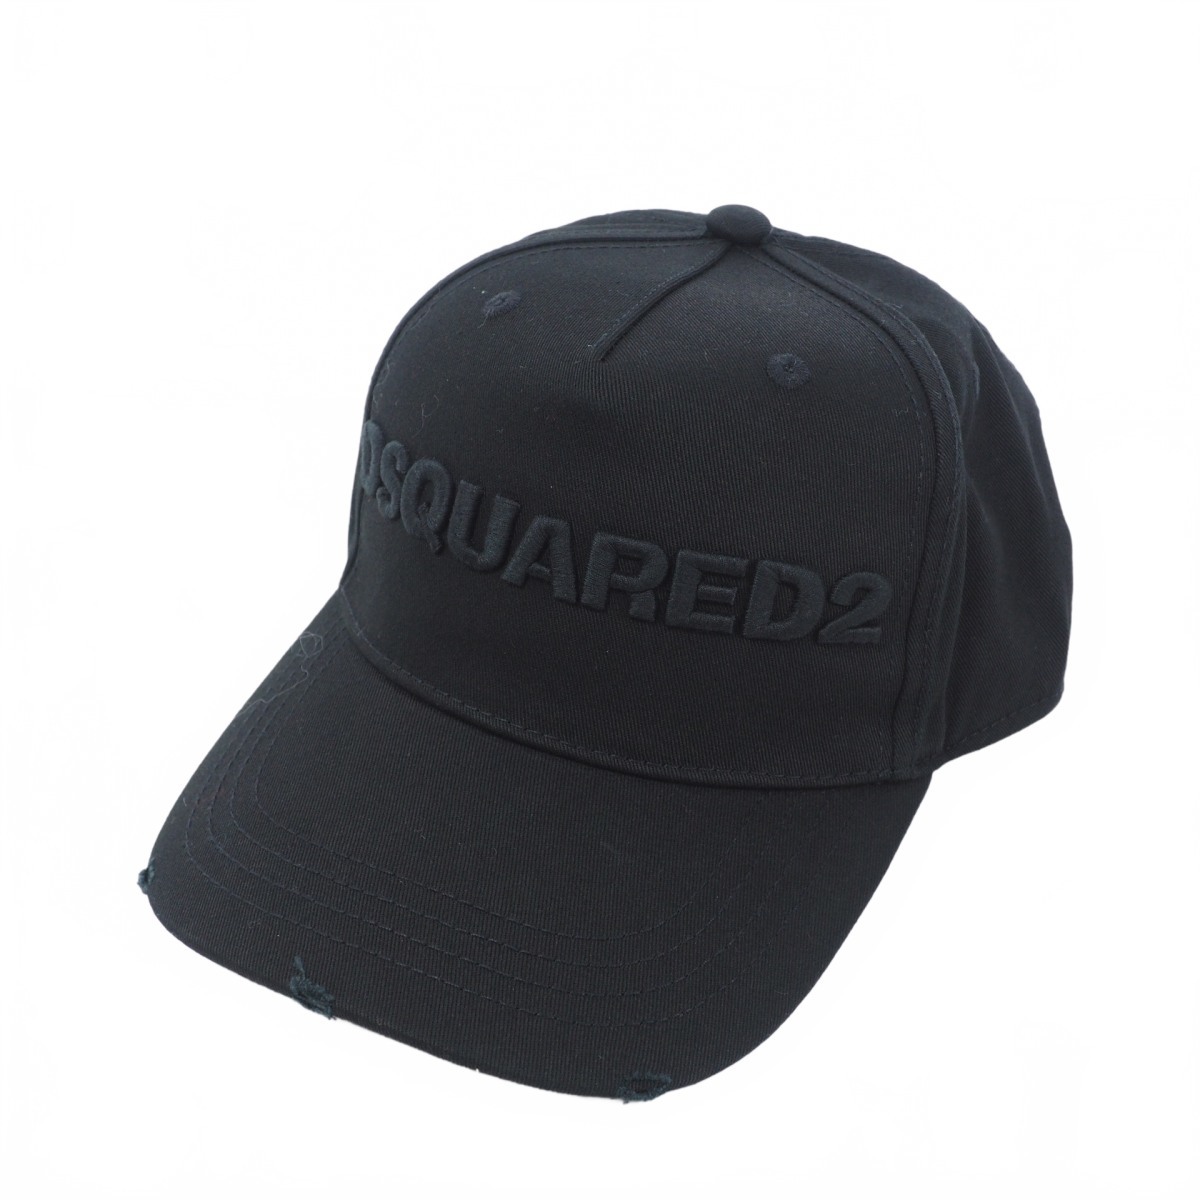 未使用品 ディースクエアード DSQUARED2 21SS ダメージ加工 ロゴキャップ 帽子 黒 ブラック S82BC0028 国内正規 メンズの画像1